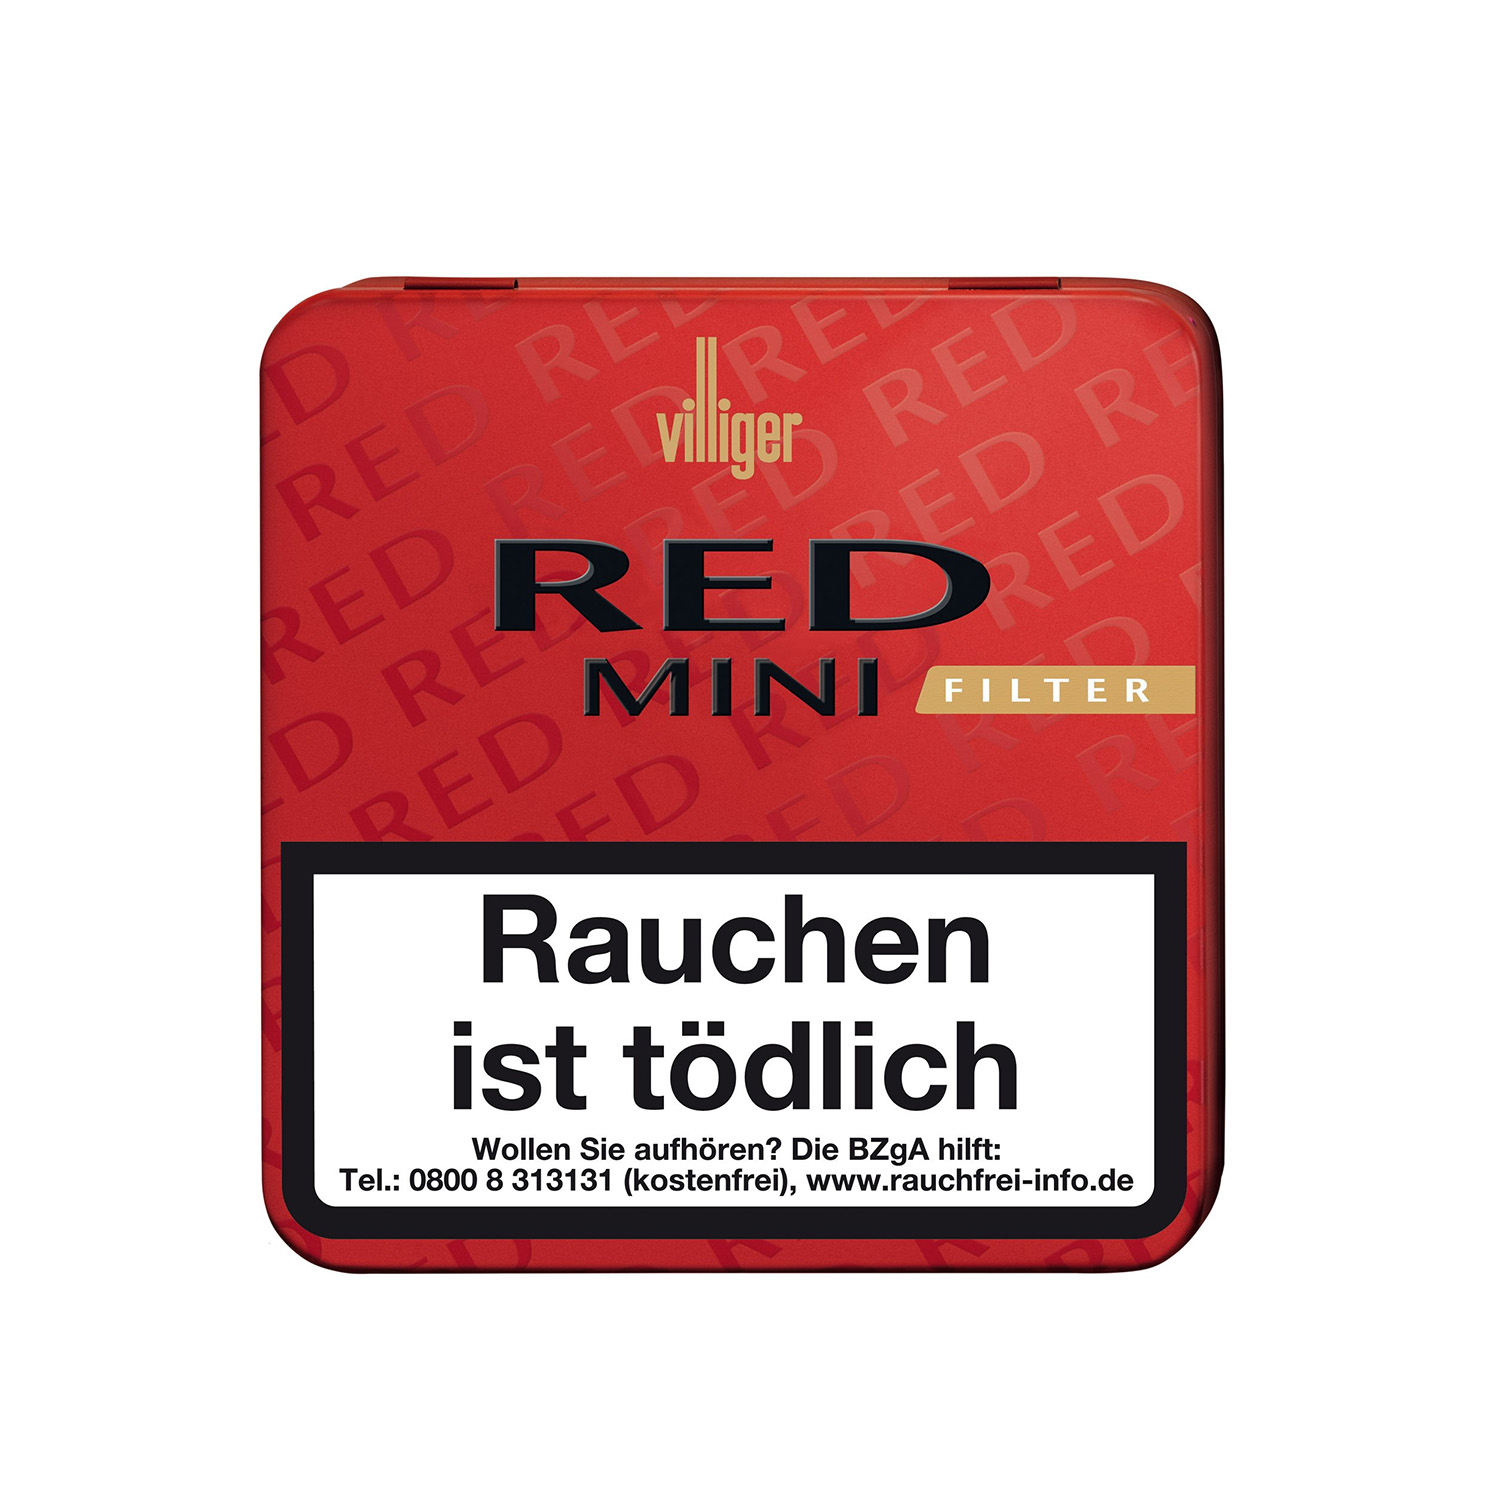 Villiger Mini Red Filter